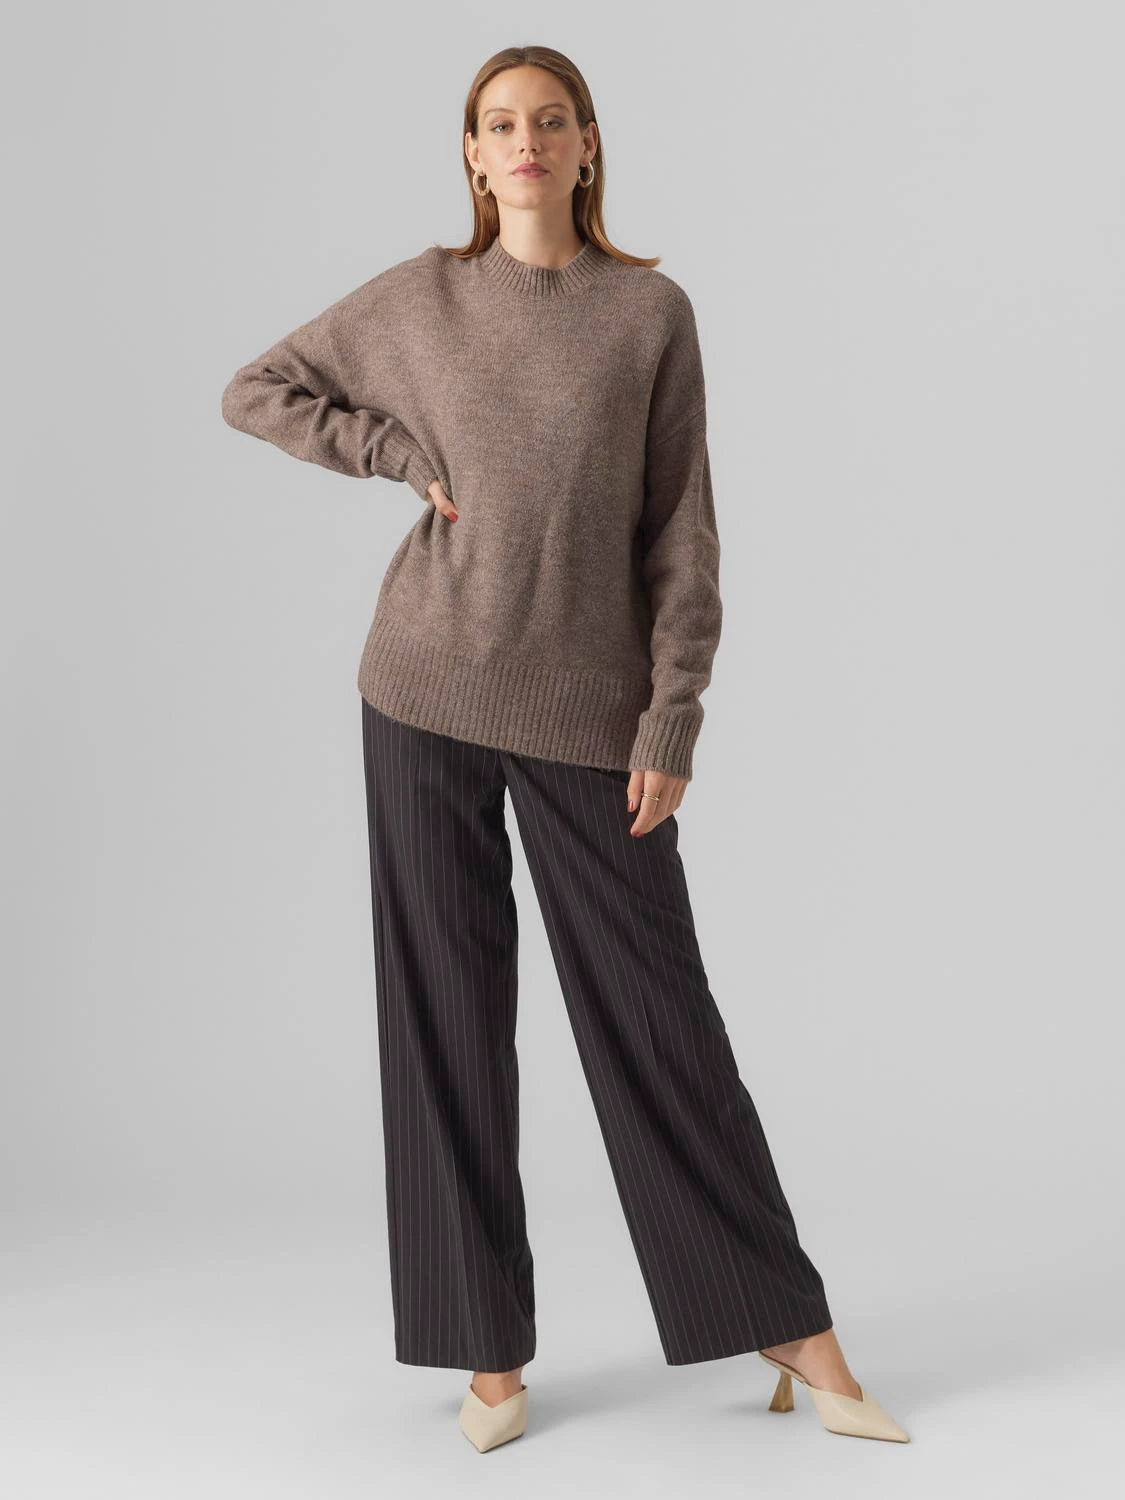 Lefile Oversize Sweater